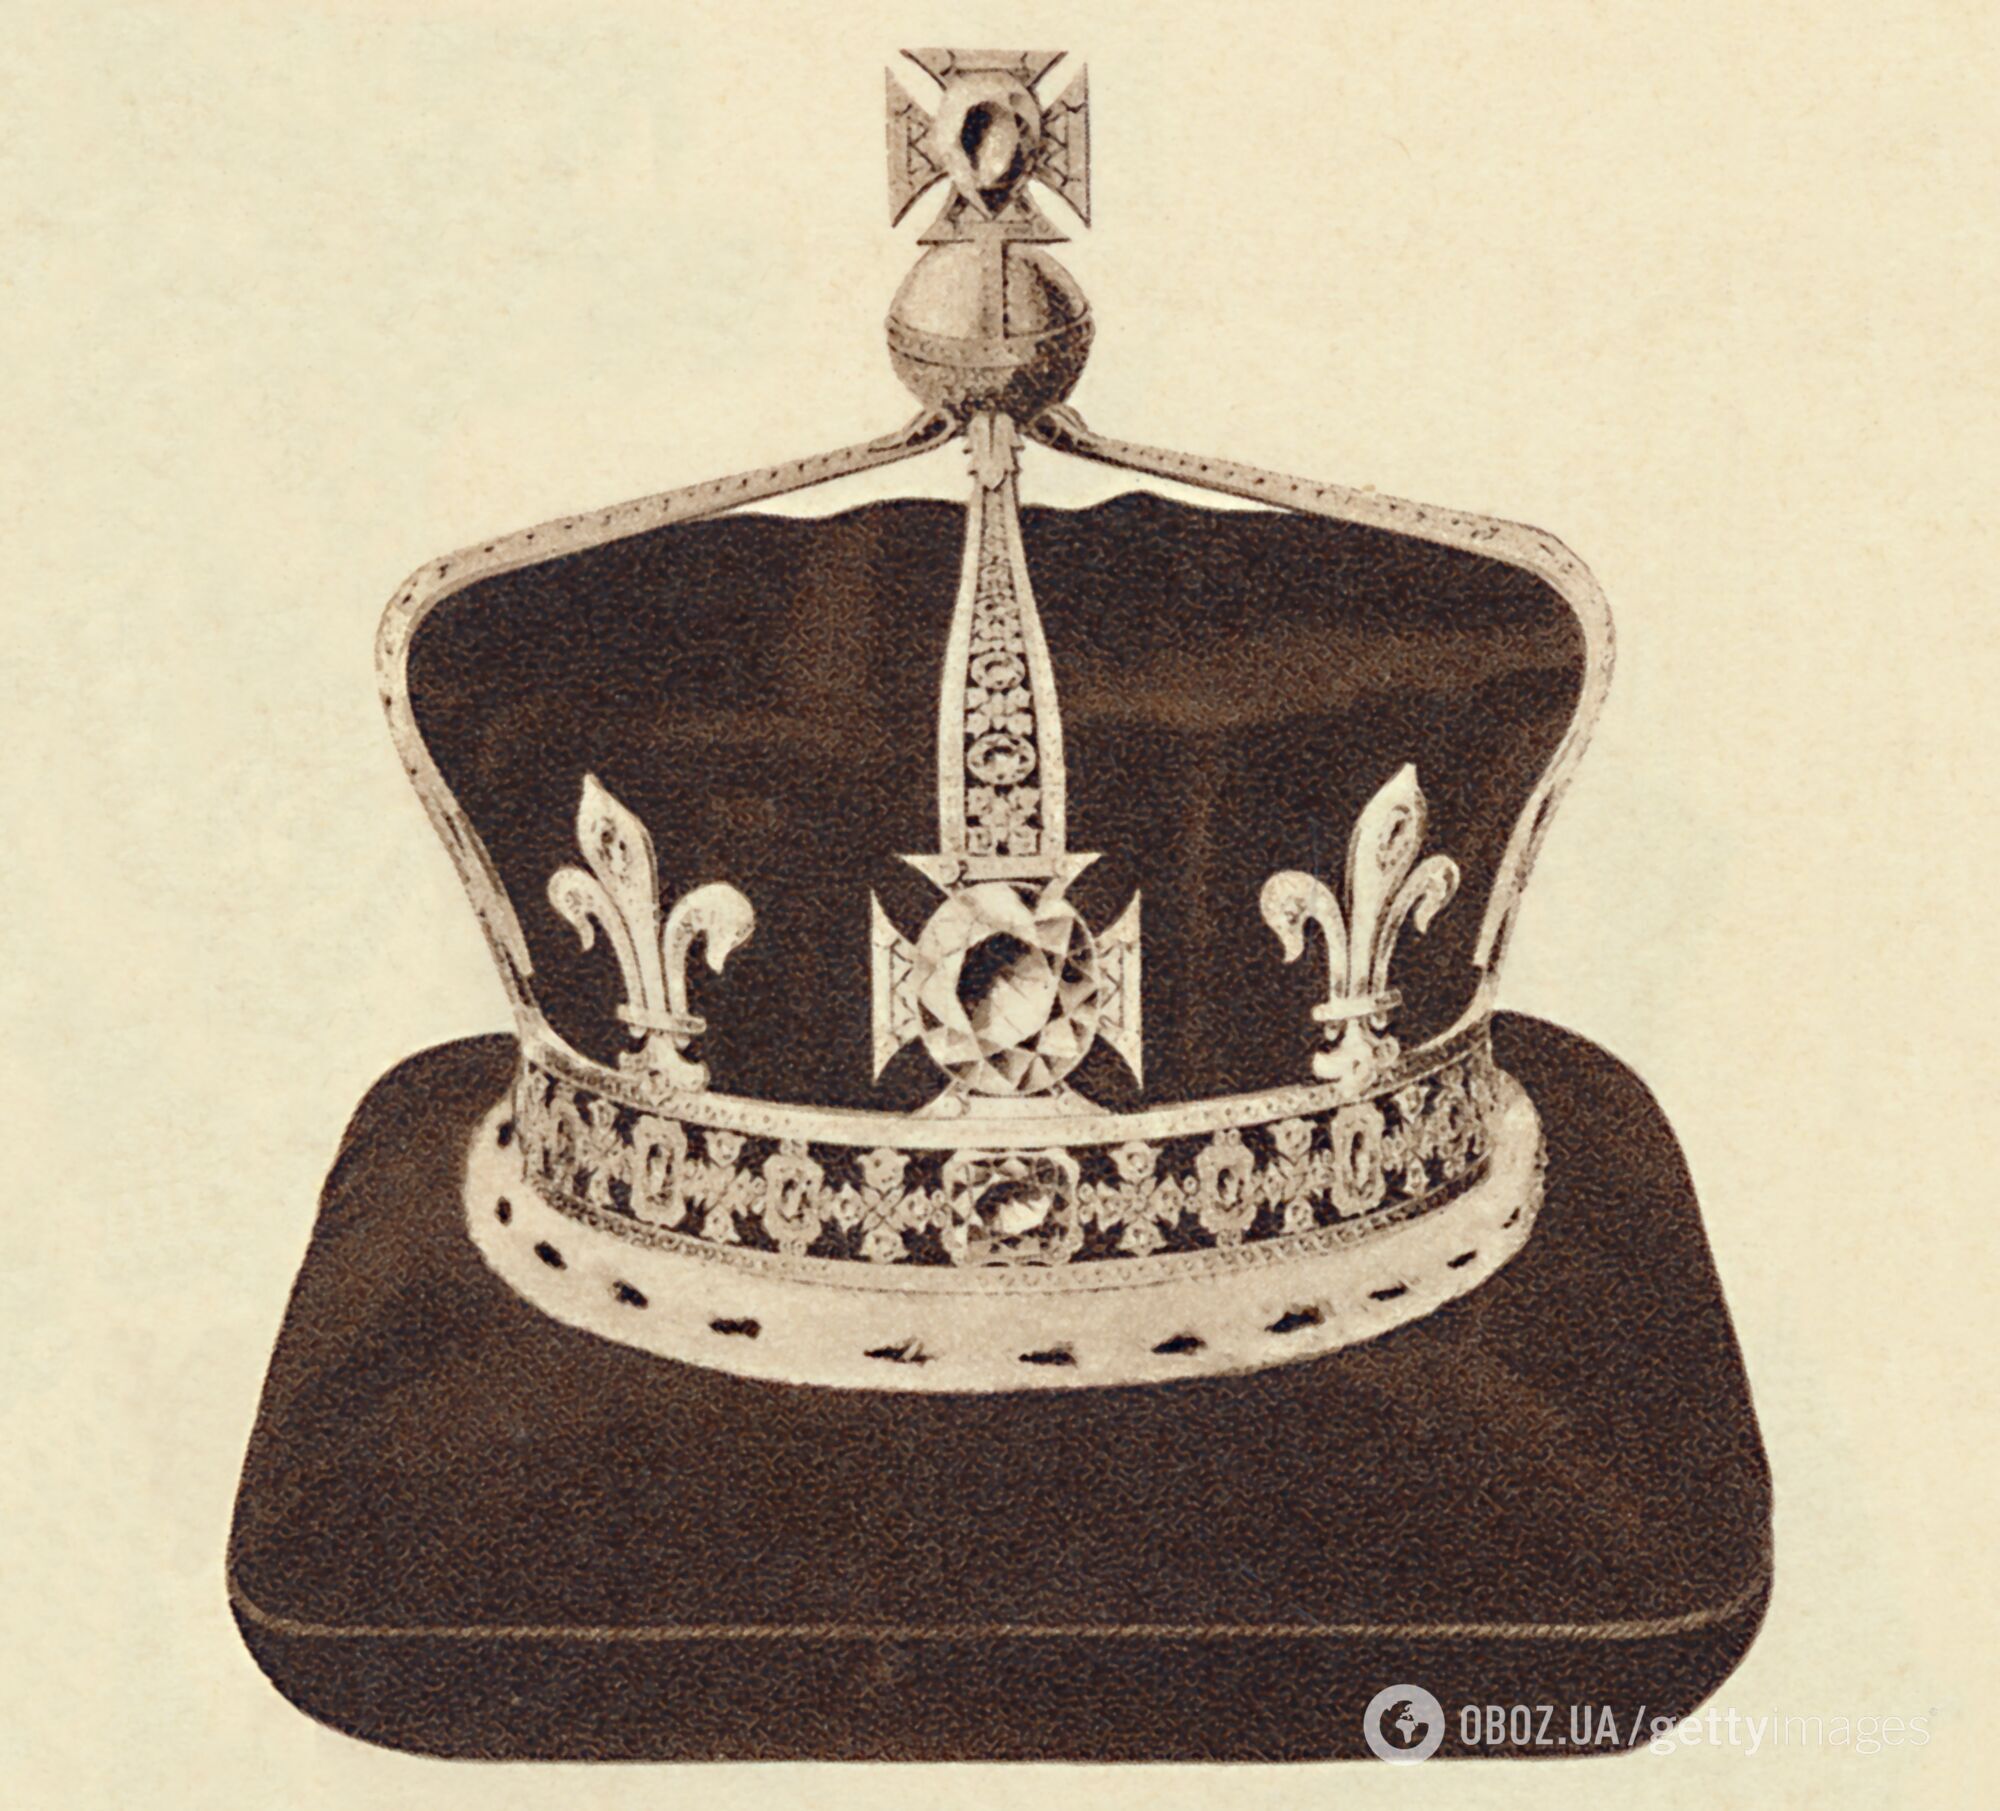 Чарльз III унаследует "проклятую корону, которая "приносит несчастье всем мужчинам". Что с ней не так